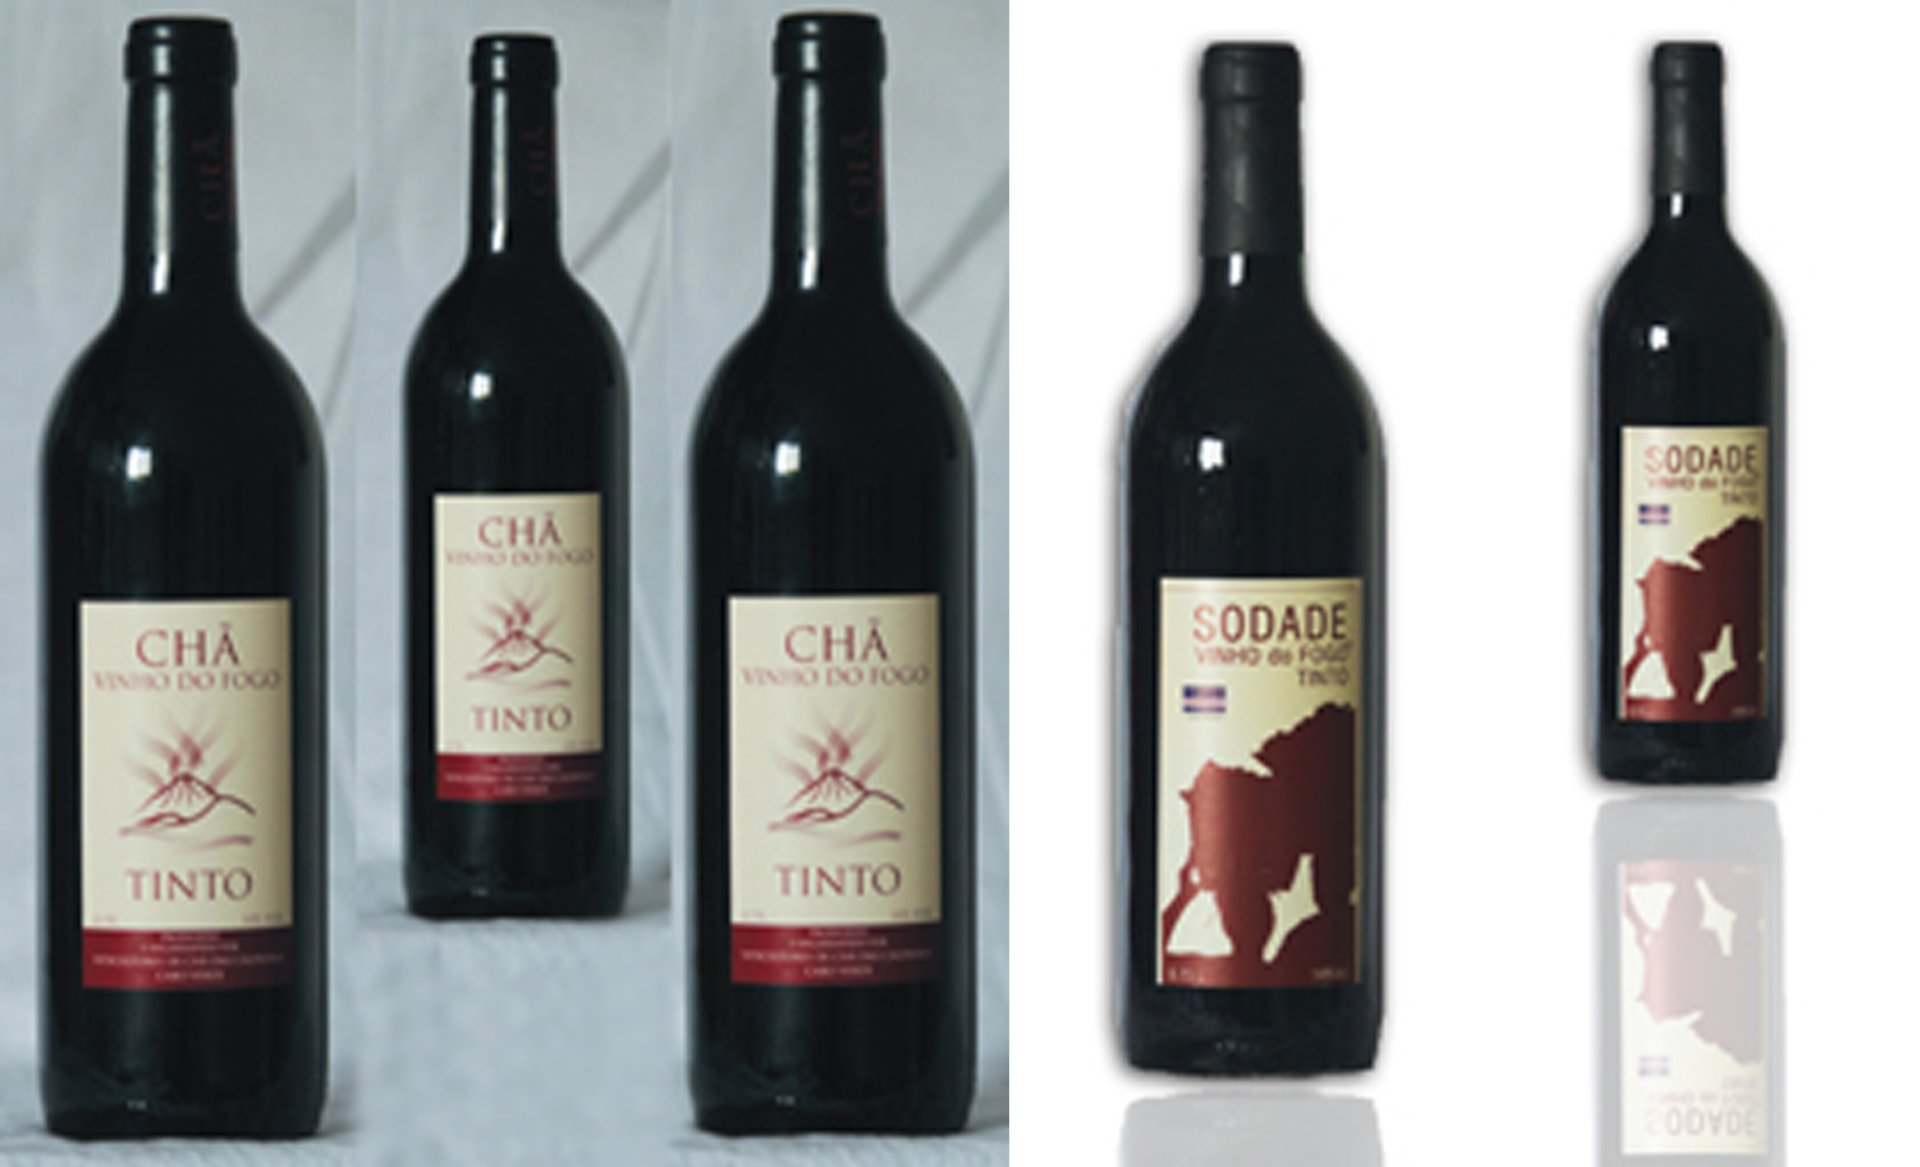 Obr 6 Produkce červeného vína ze soukromého vinařství Eduína Lopese "Sodade" a produkce družstevního vinařství „Chã das Caldeiras“.